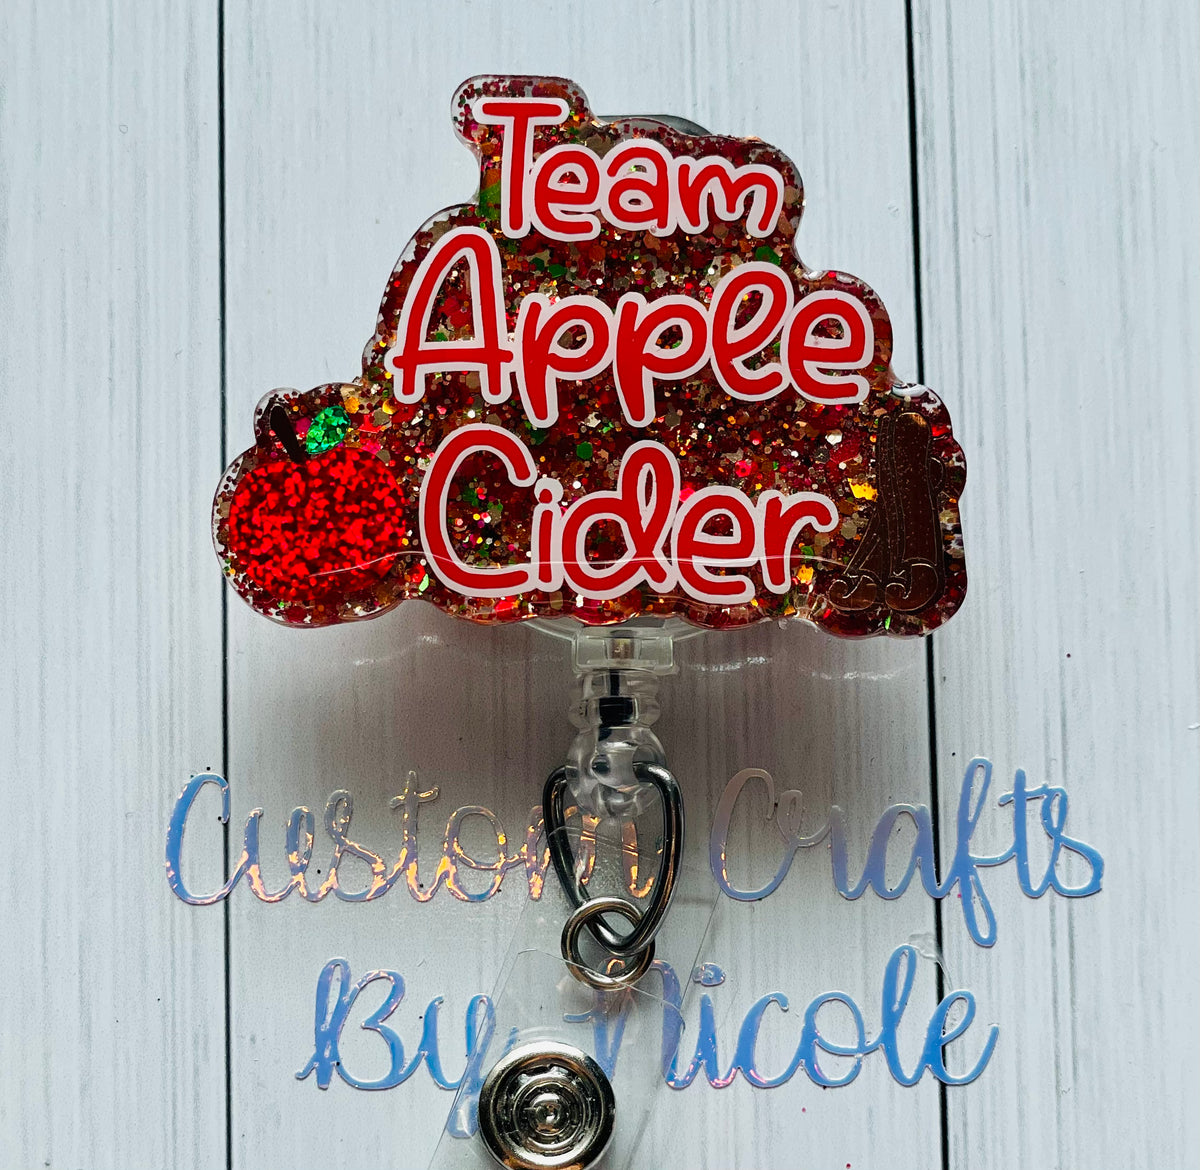 Team apple cider